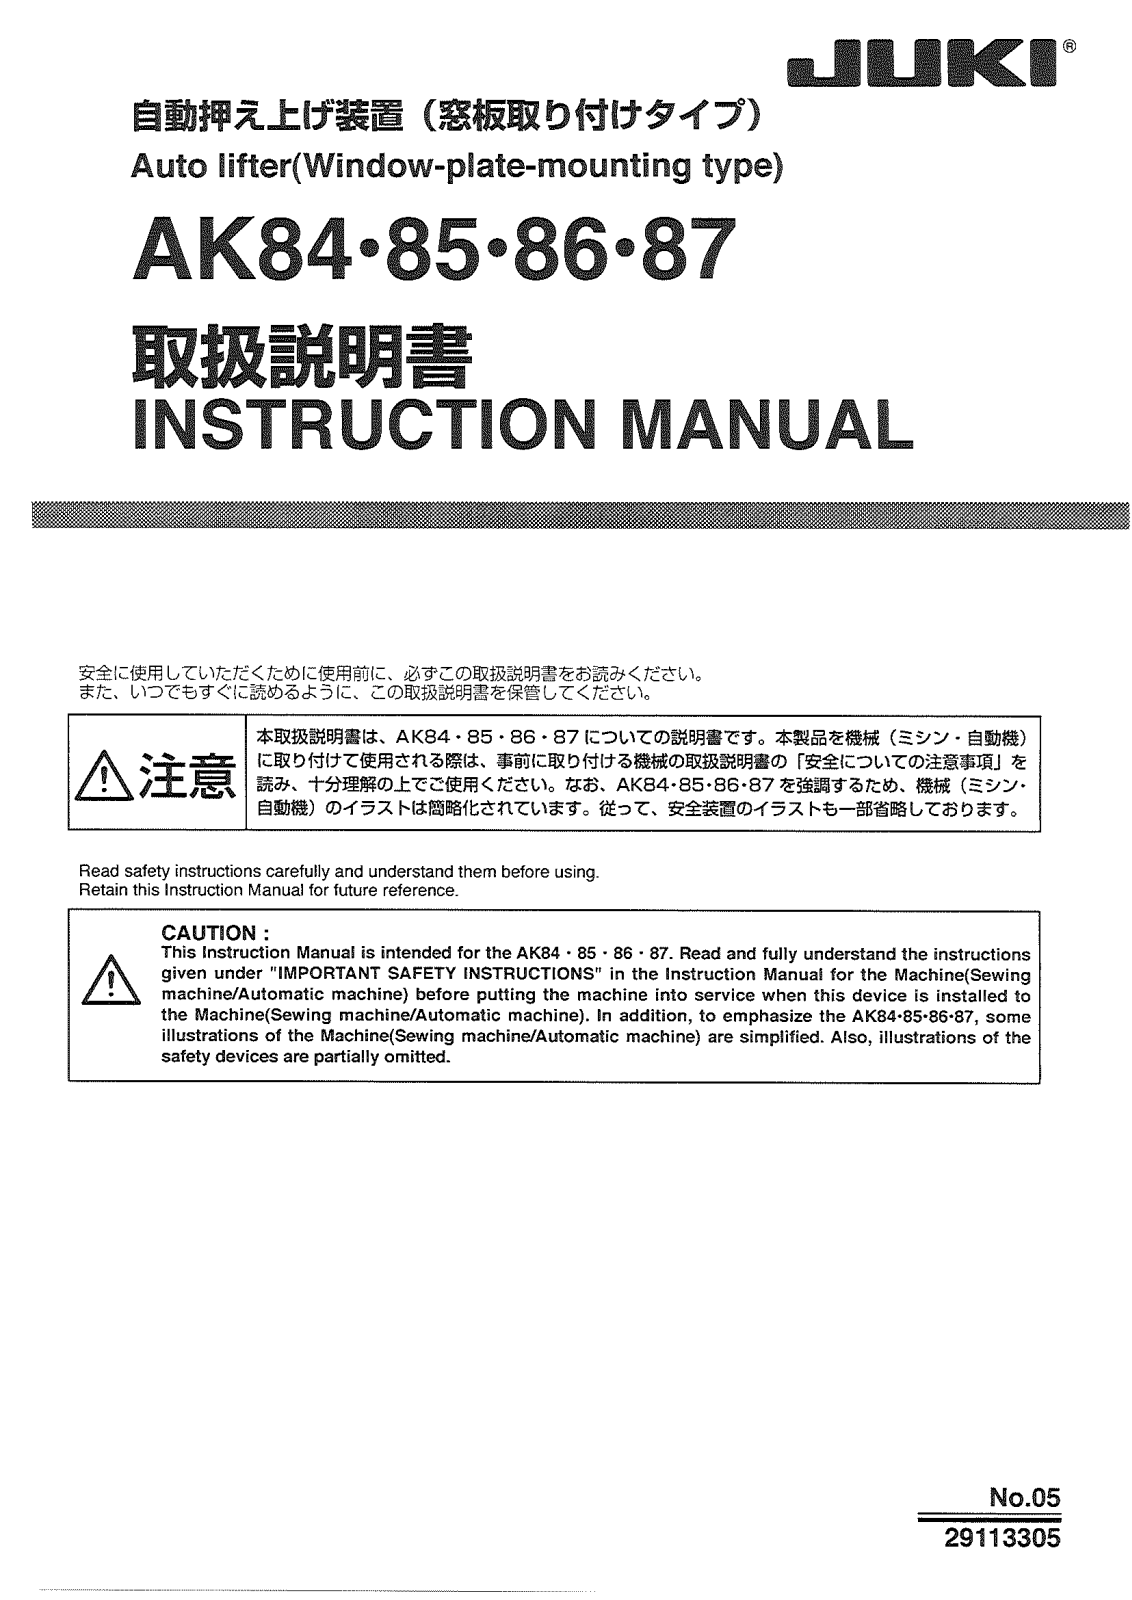 Juki AK84, AK85, AK86, AK87 Parts List